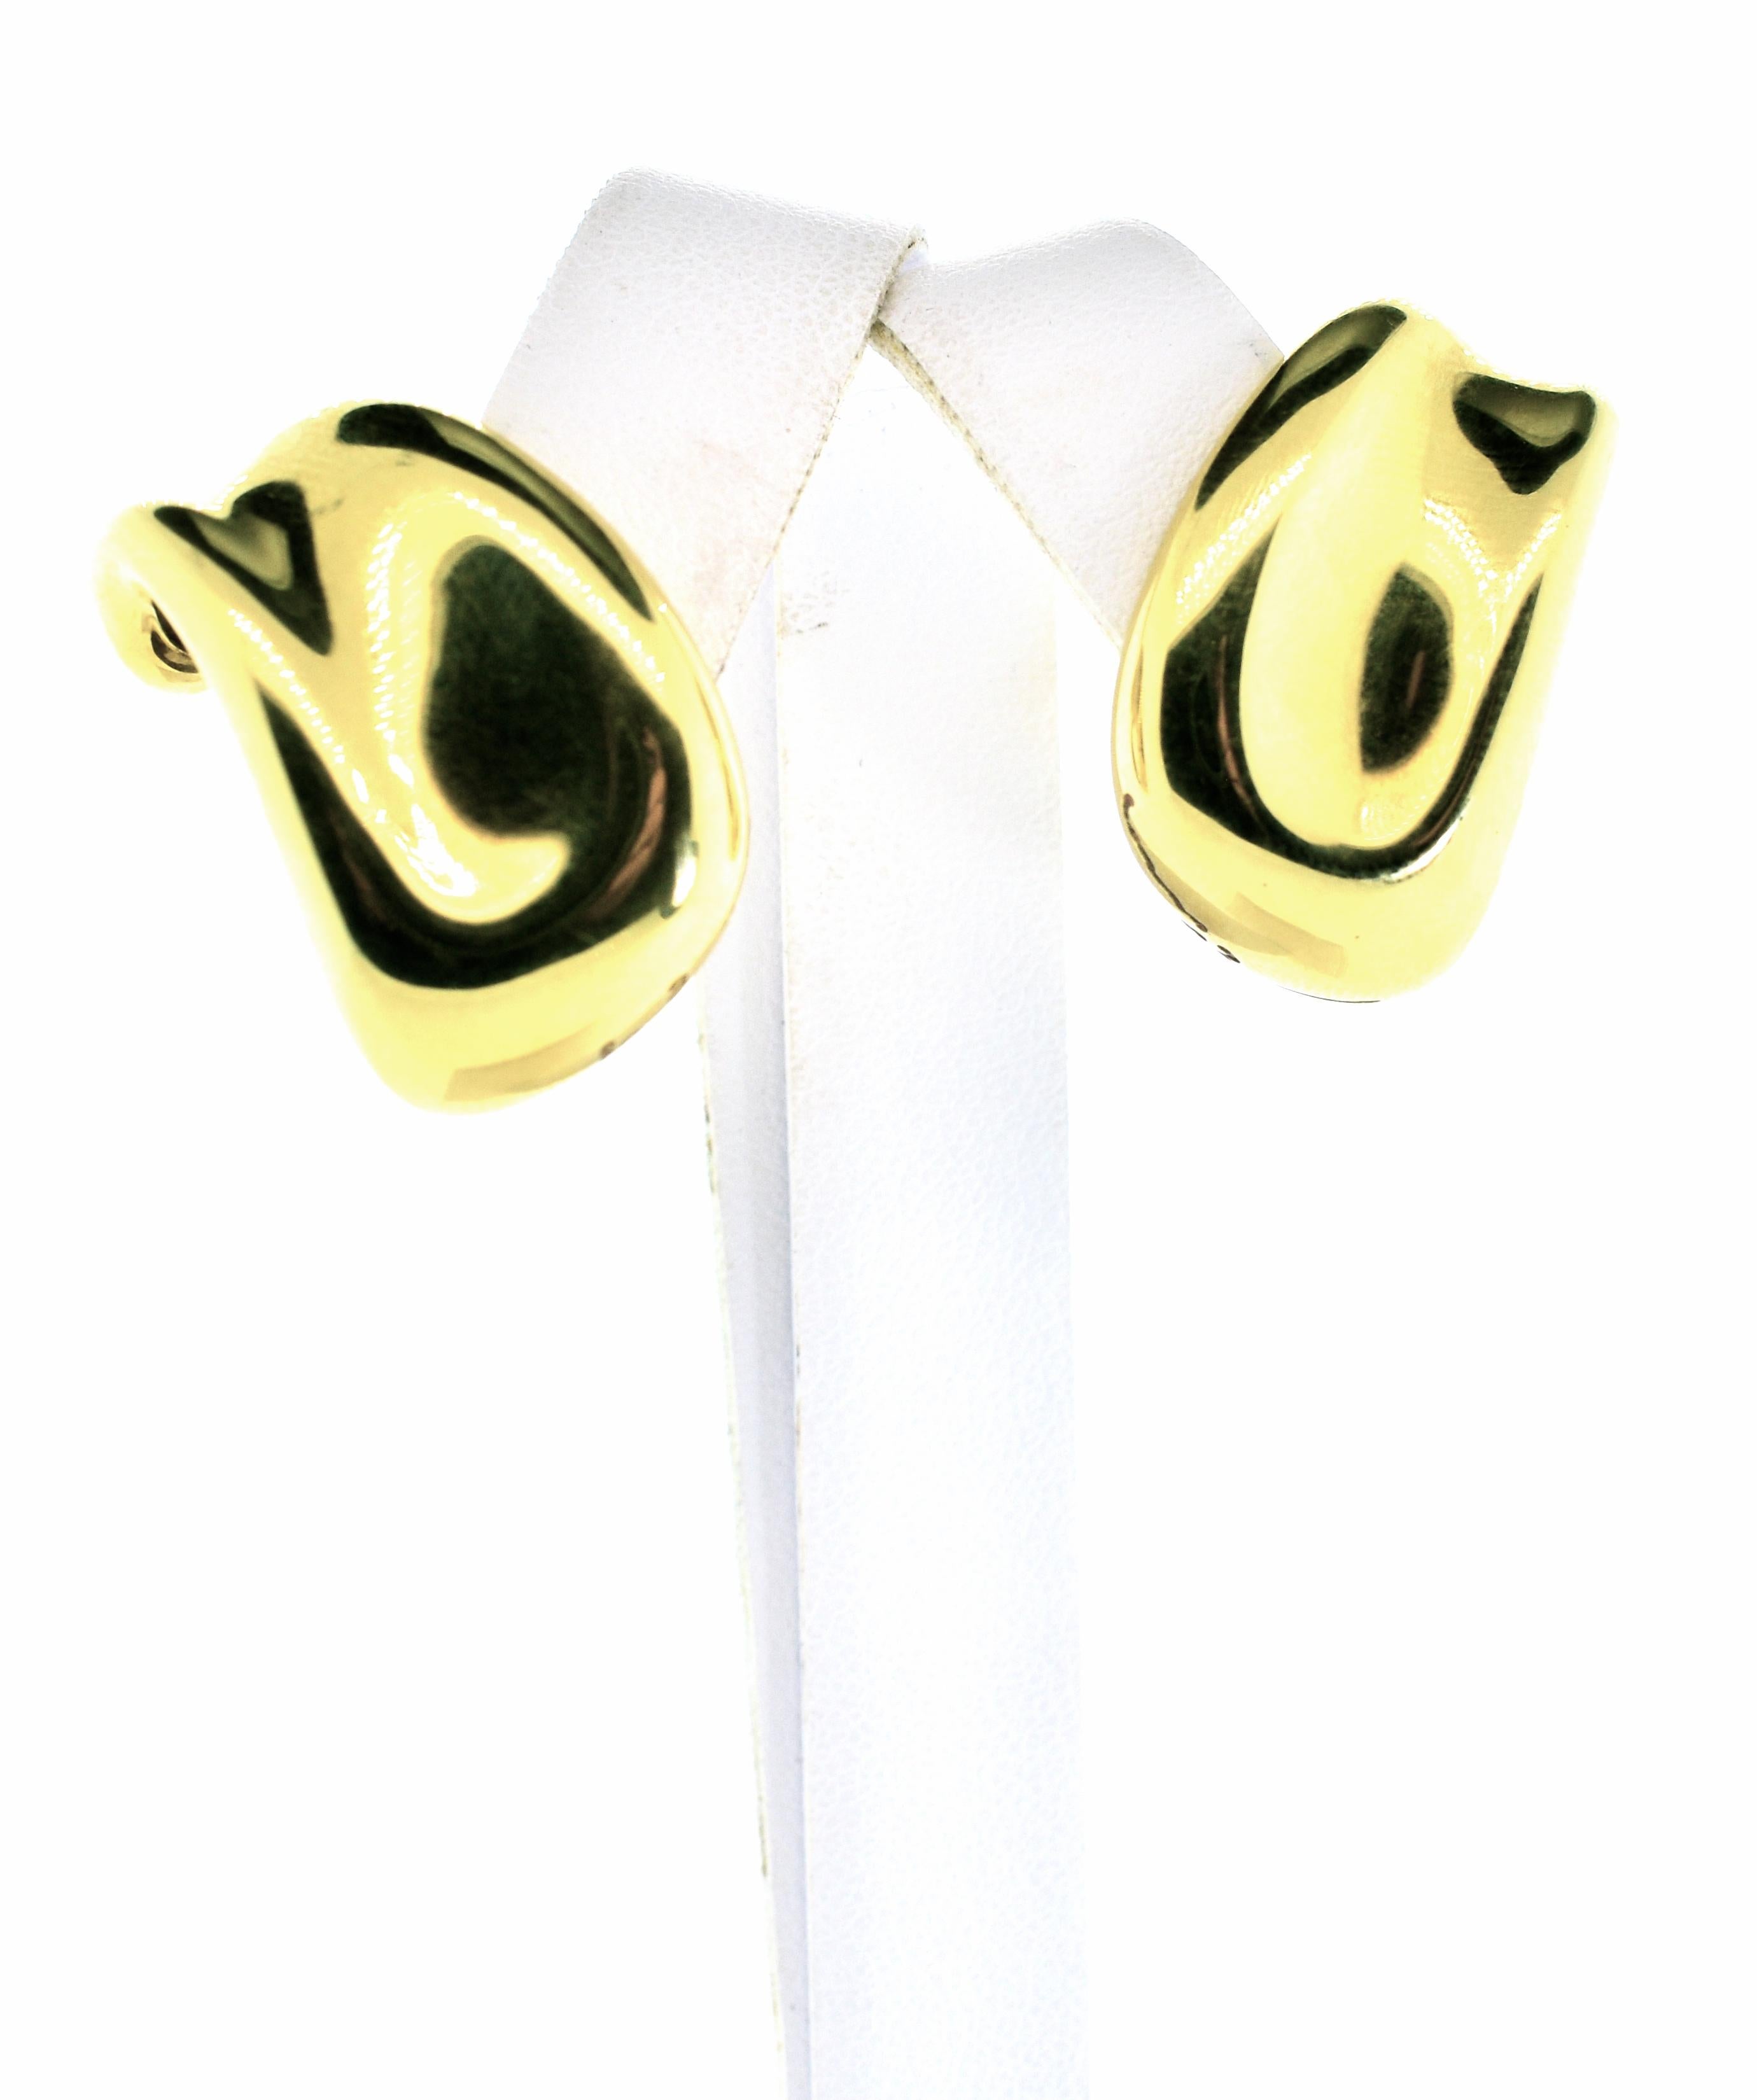 Minas Opsis Ohrringe aus 18 Karat Gold, hergestellt in den 1970er Jahren von dem berühmten Juwelierhaus Mines in Griechenland.  Heute werden sie in ihrem Geschäft für etwa 4.000 Dollar angeboten.  Wir haben unser Paar vor kurzem von einem Kunden